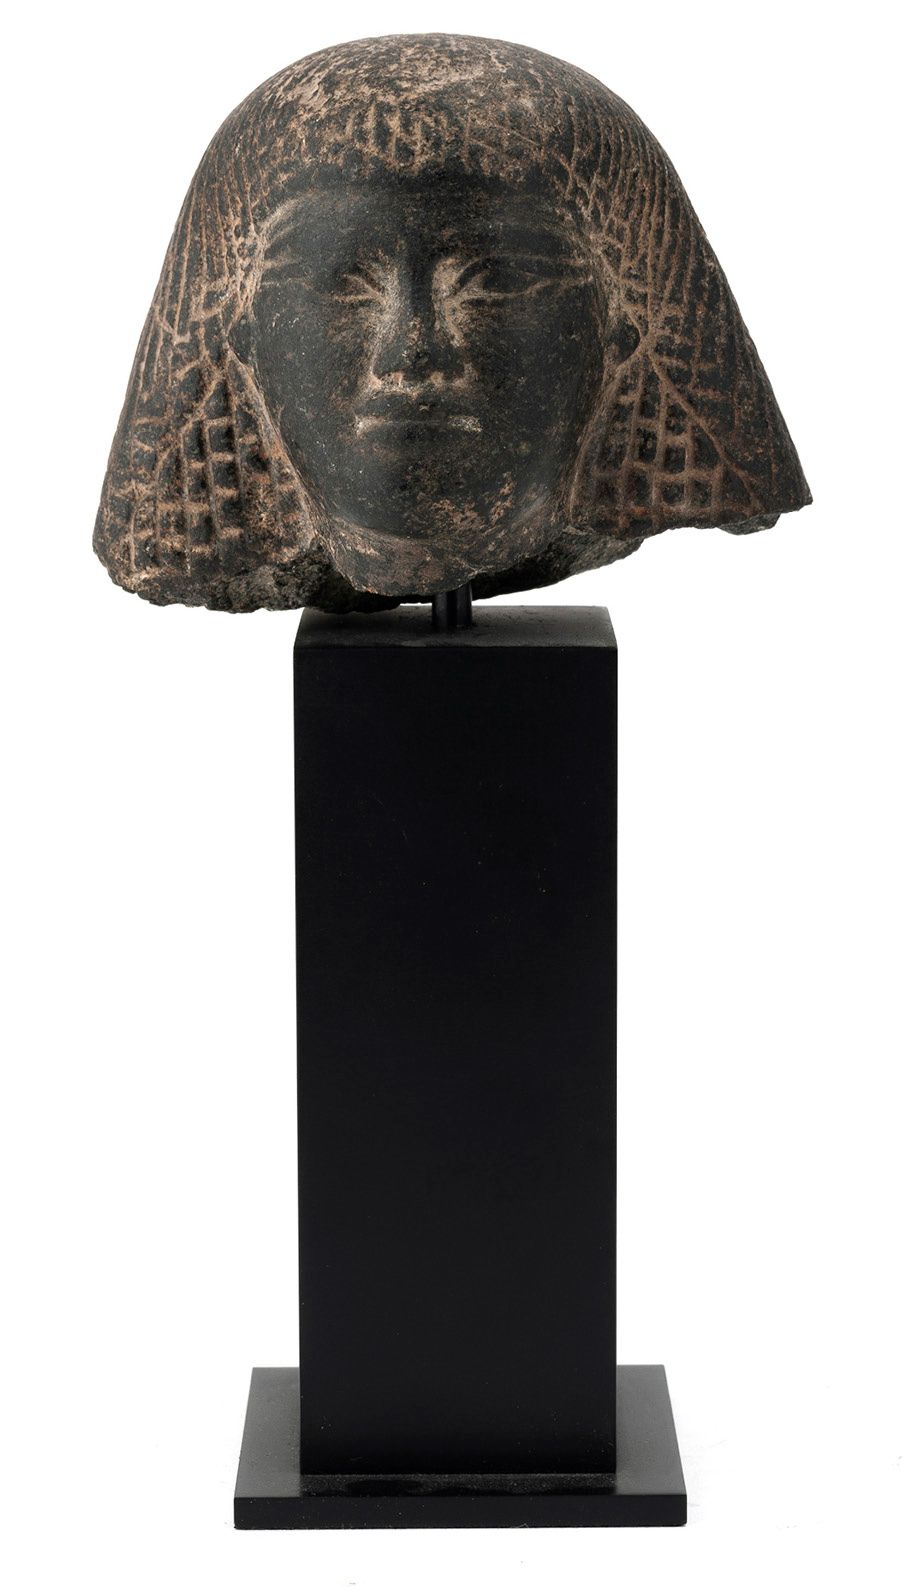 ÉGYPTE, Nouvel Empire (1552- 1070 avant J.-C.) 从雕像上看人头。
两部分的假发，上半部分由长发组成，下半部分由小长&hellip;